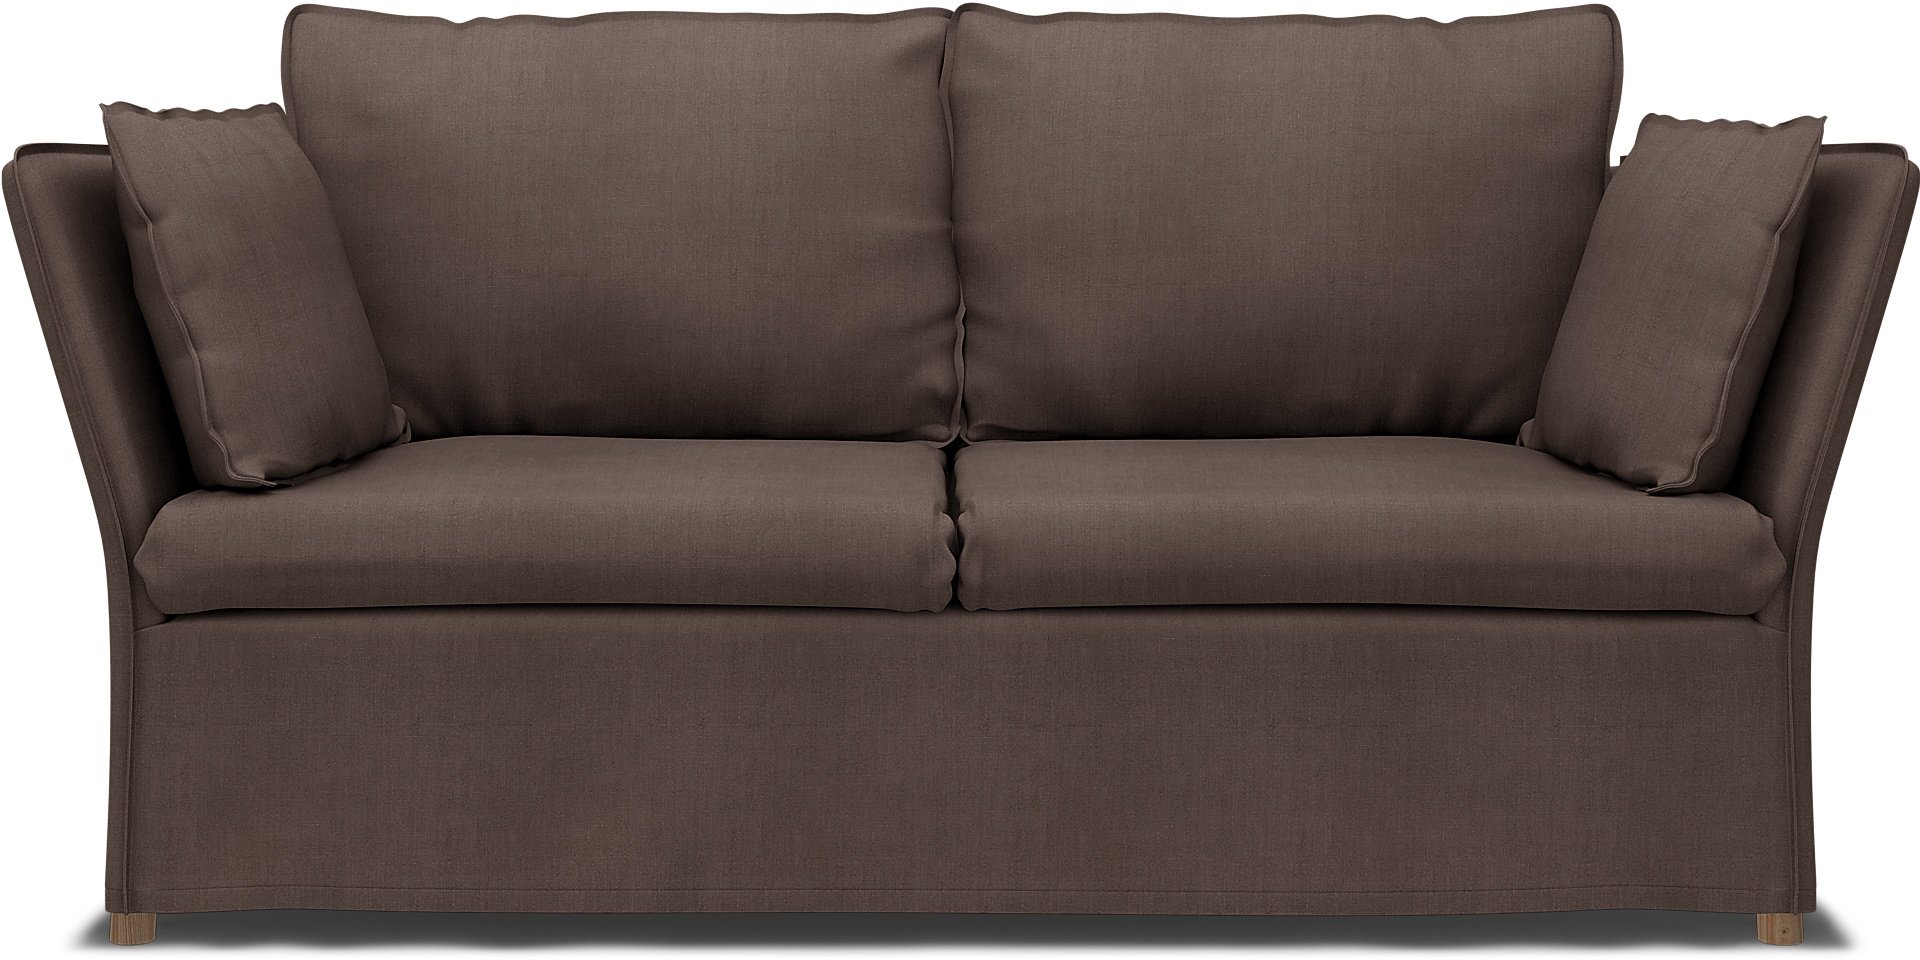 IKEA - Backsalen 2 seater sofa, Cocoa, Linen - Bemz